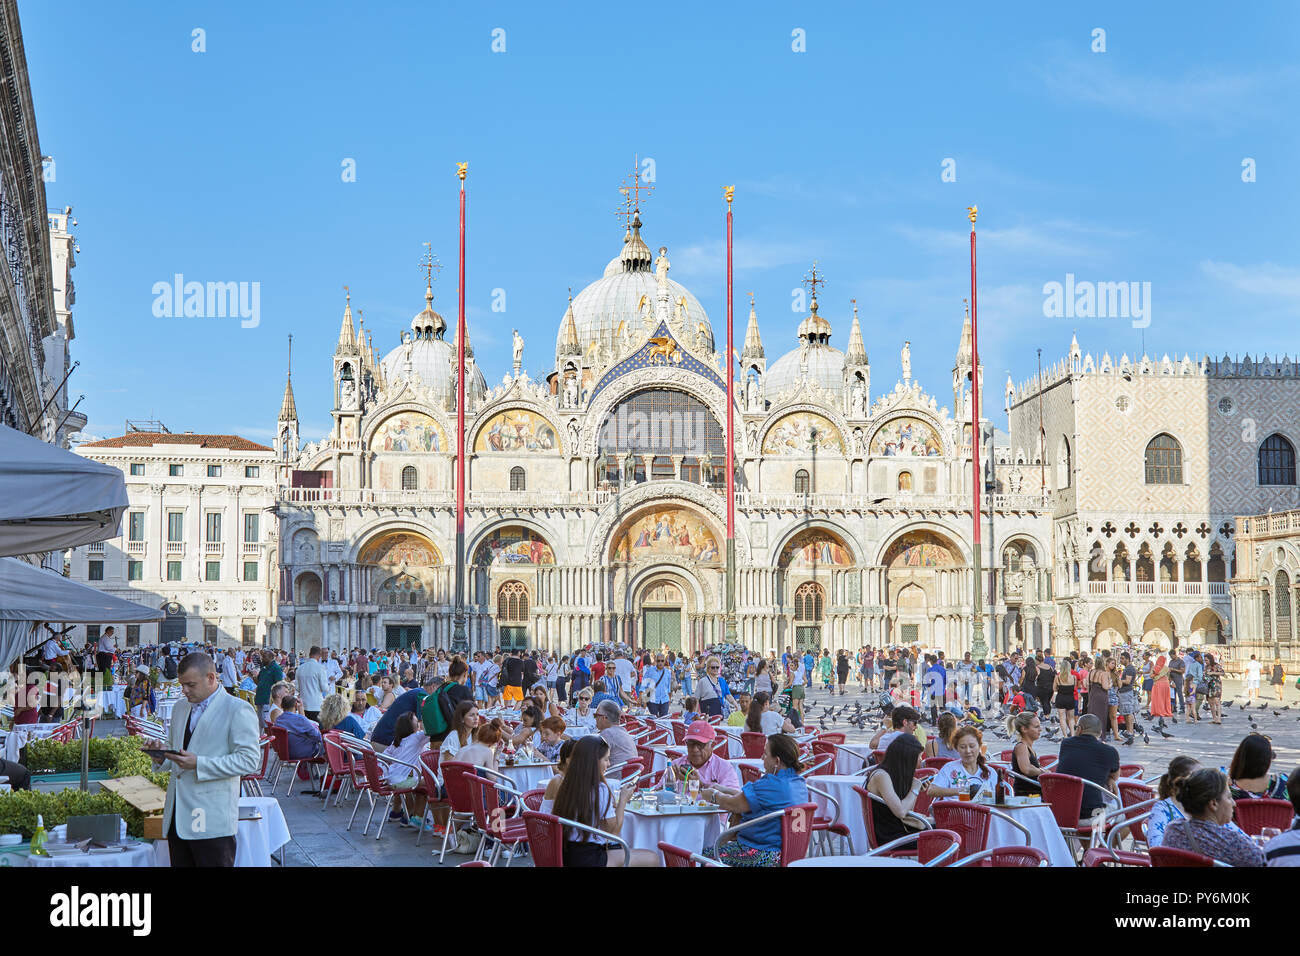 Venedig, Italien - 13 AUGUST 2017: Saint Mark Basilika Fassade und Platz mit Bürgersteig Tabelle mit Menschen und Touristen, blauer Himmel an einem sonnigen Sommertag im Stockfoto